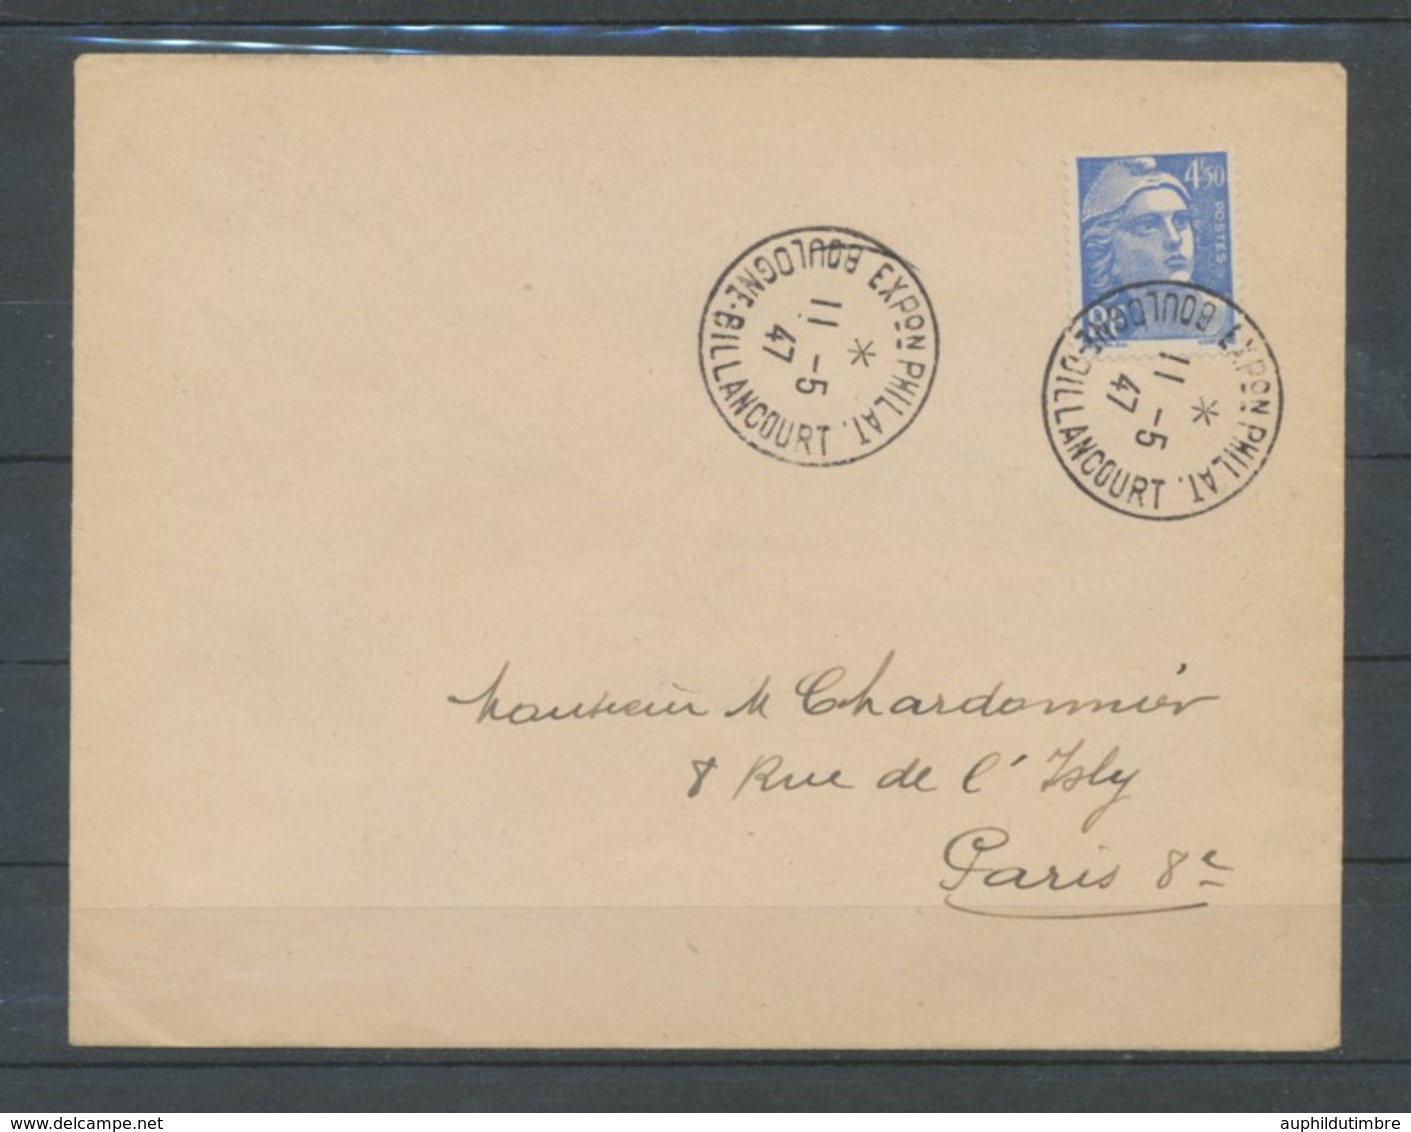 1947 Lettre Obl. Expo Phil. De Boulogne BILLANCOURT C451 - Commemorative Postmarks